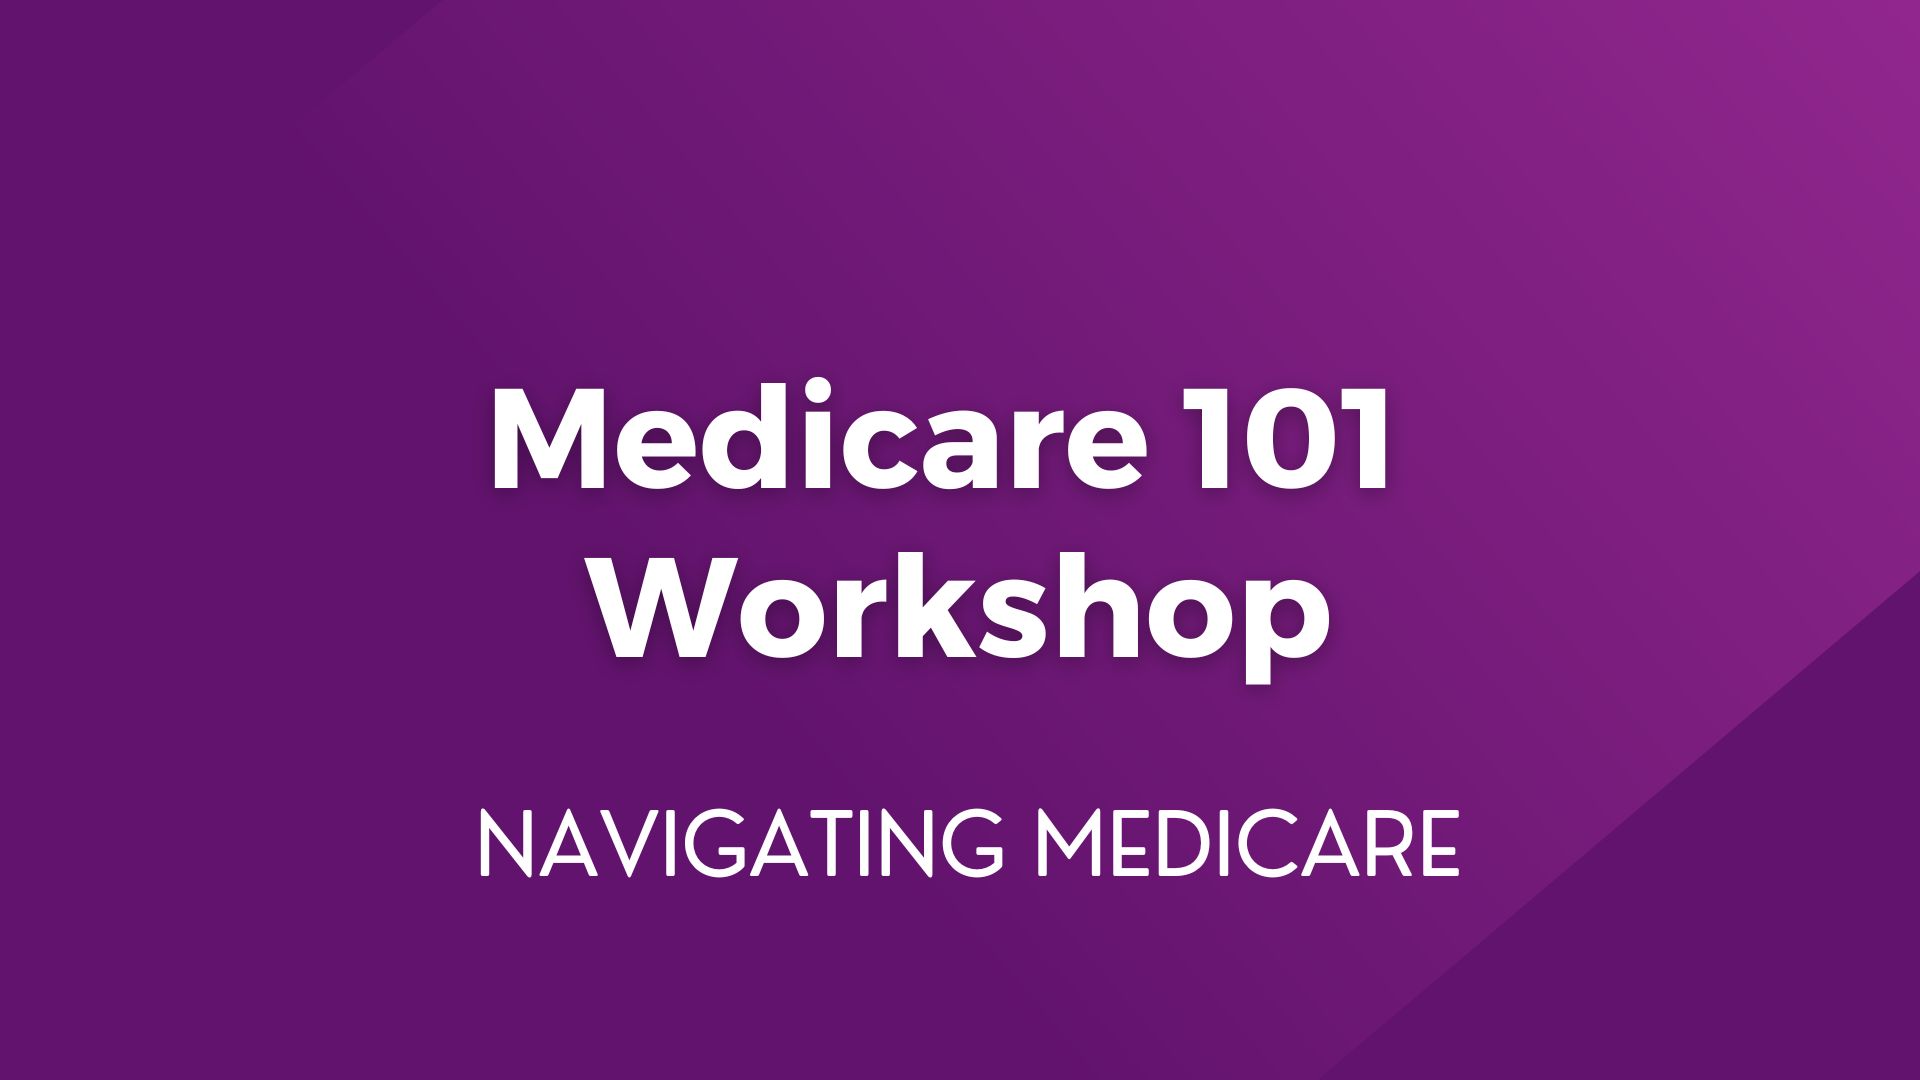 Medicare 101 Workshop – June 6